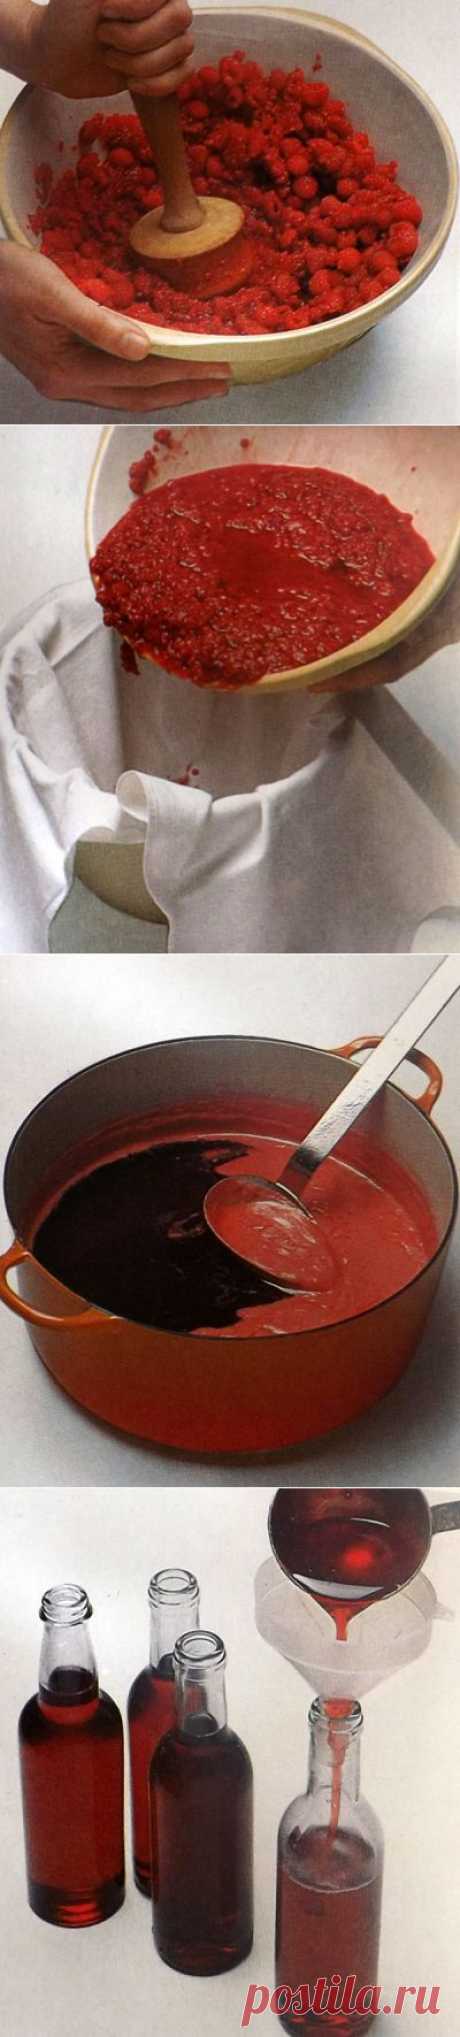 Как сварить превосходный малиновый сироп. Фото-рецепт. | Хозяева дома.